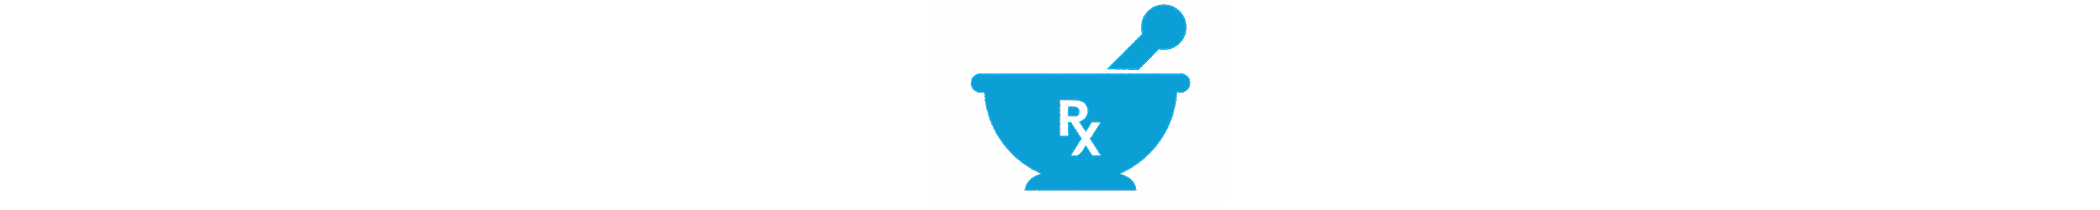 Soundview Pharmacy Logo